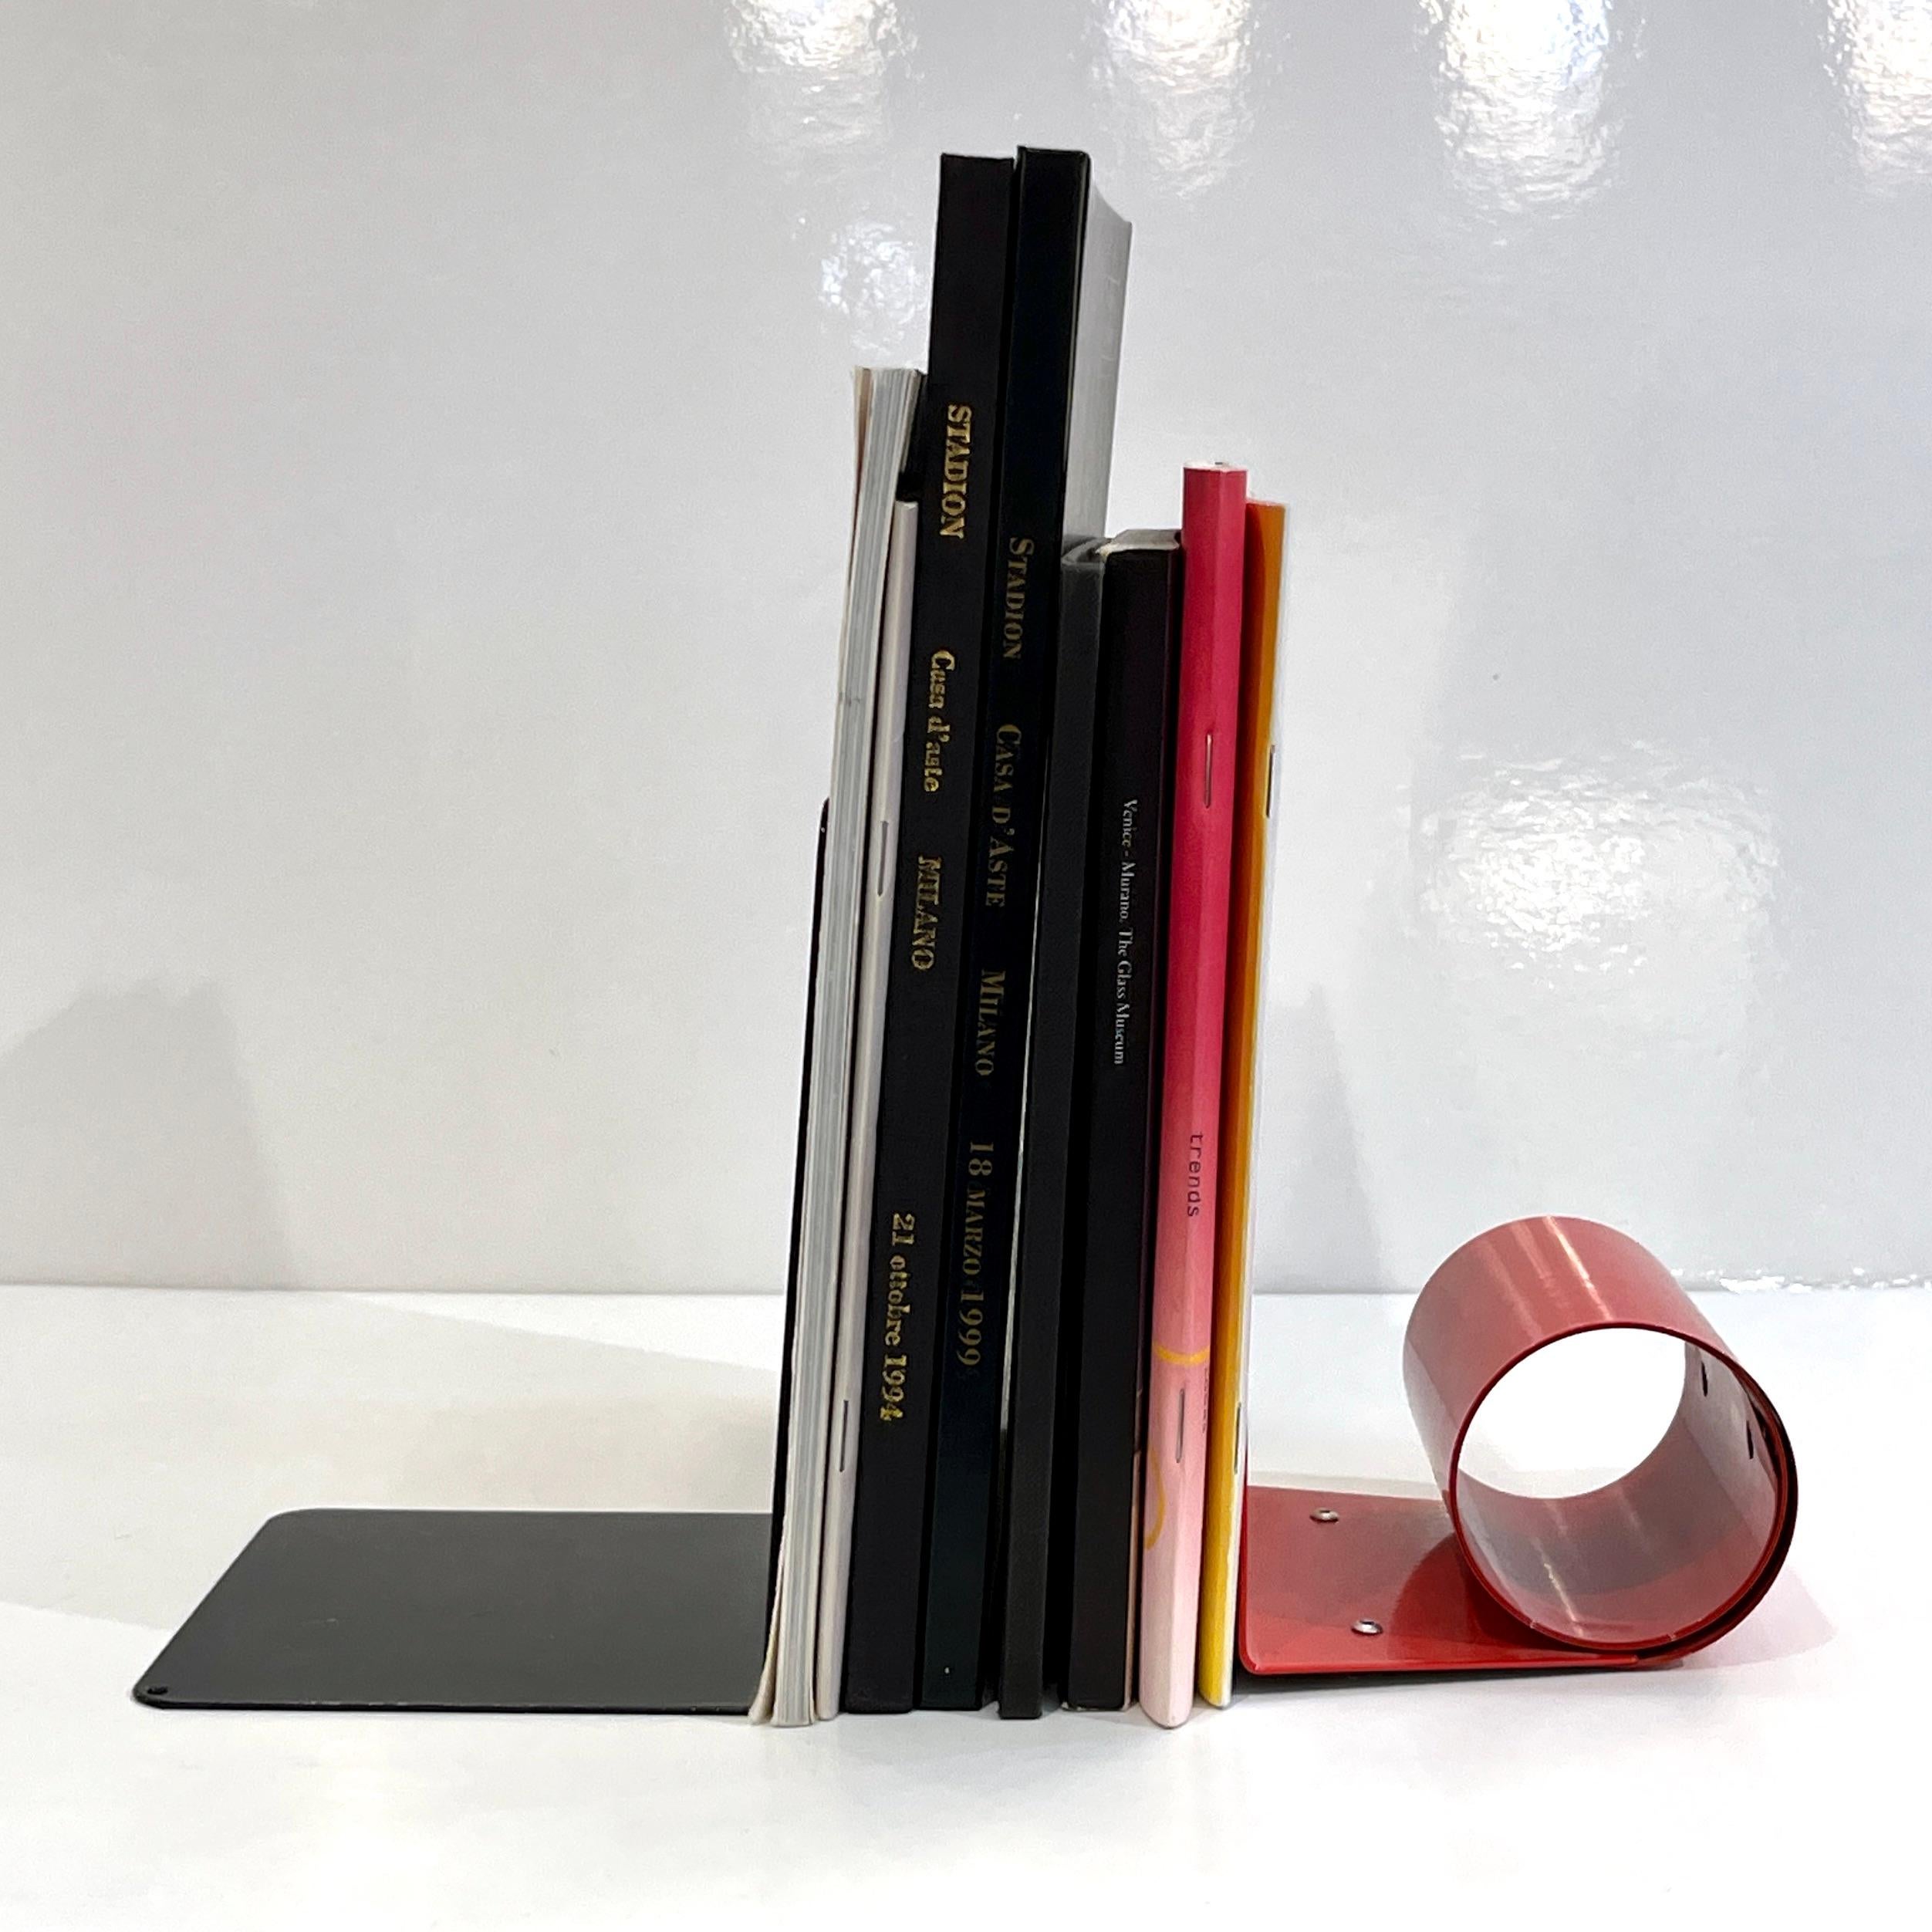 Serre-livres en métal au design moderne et élégant, laqués noir et rouge. Les deux serre-livres sont de style complémentaire mais de forme géométrique différente. Le serre-livres noir présente des détails géométriques percés qui permettent de